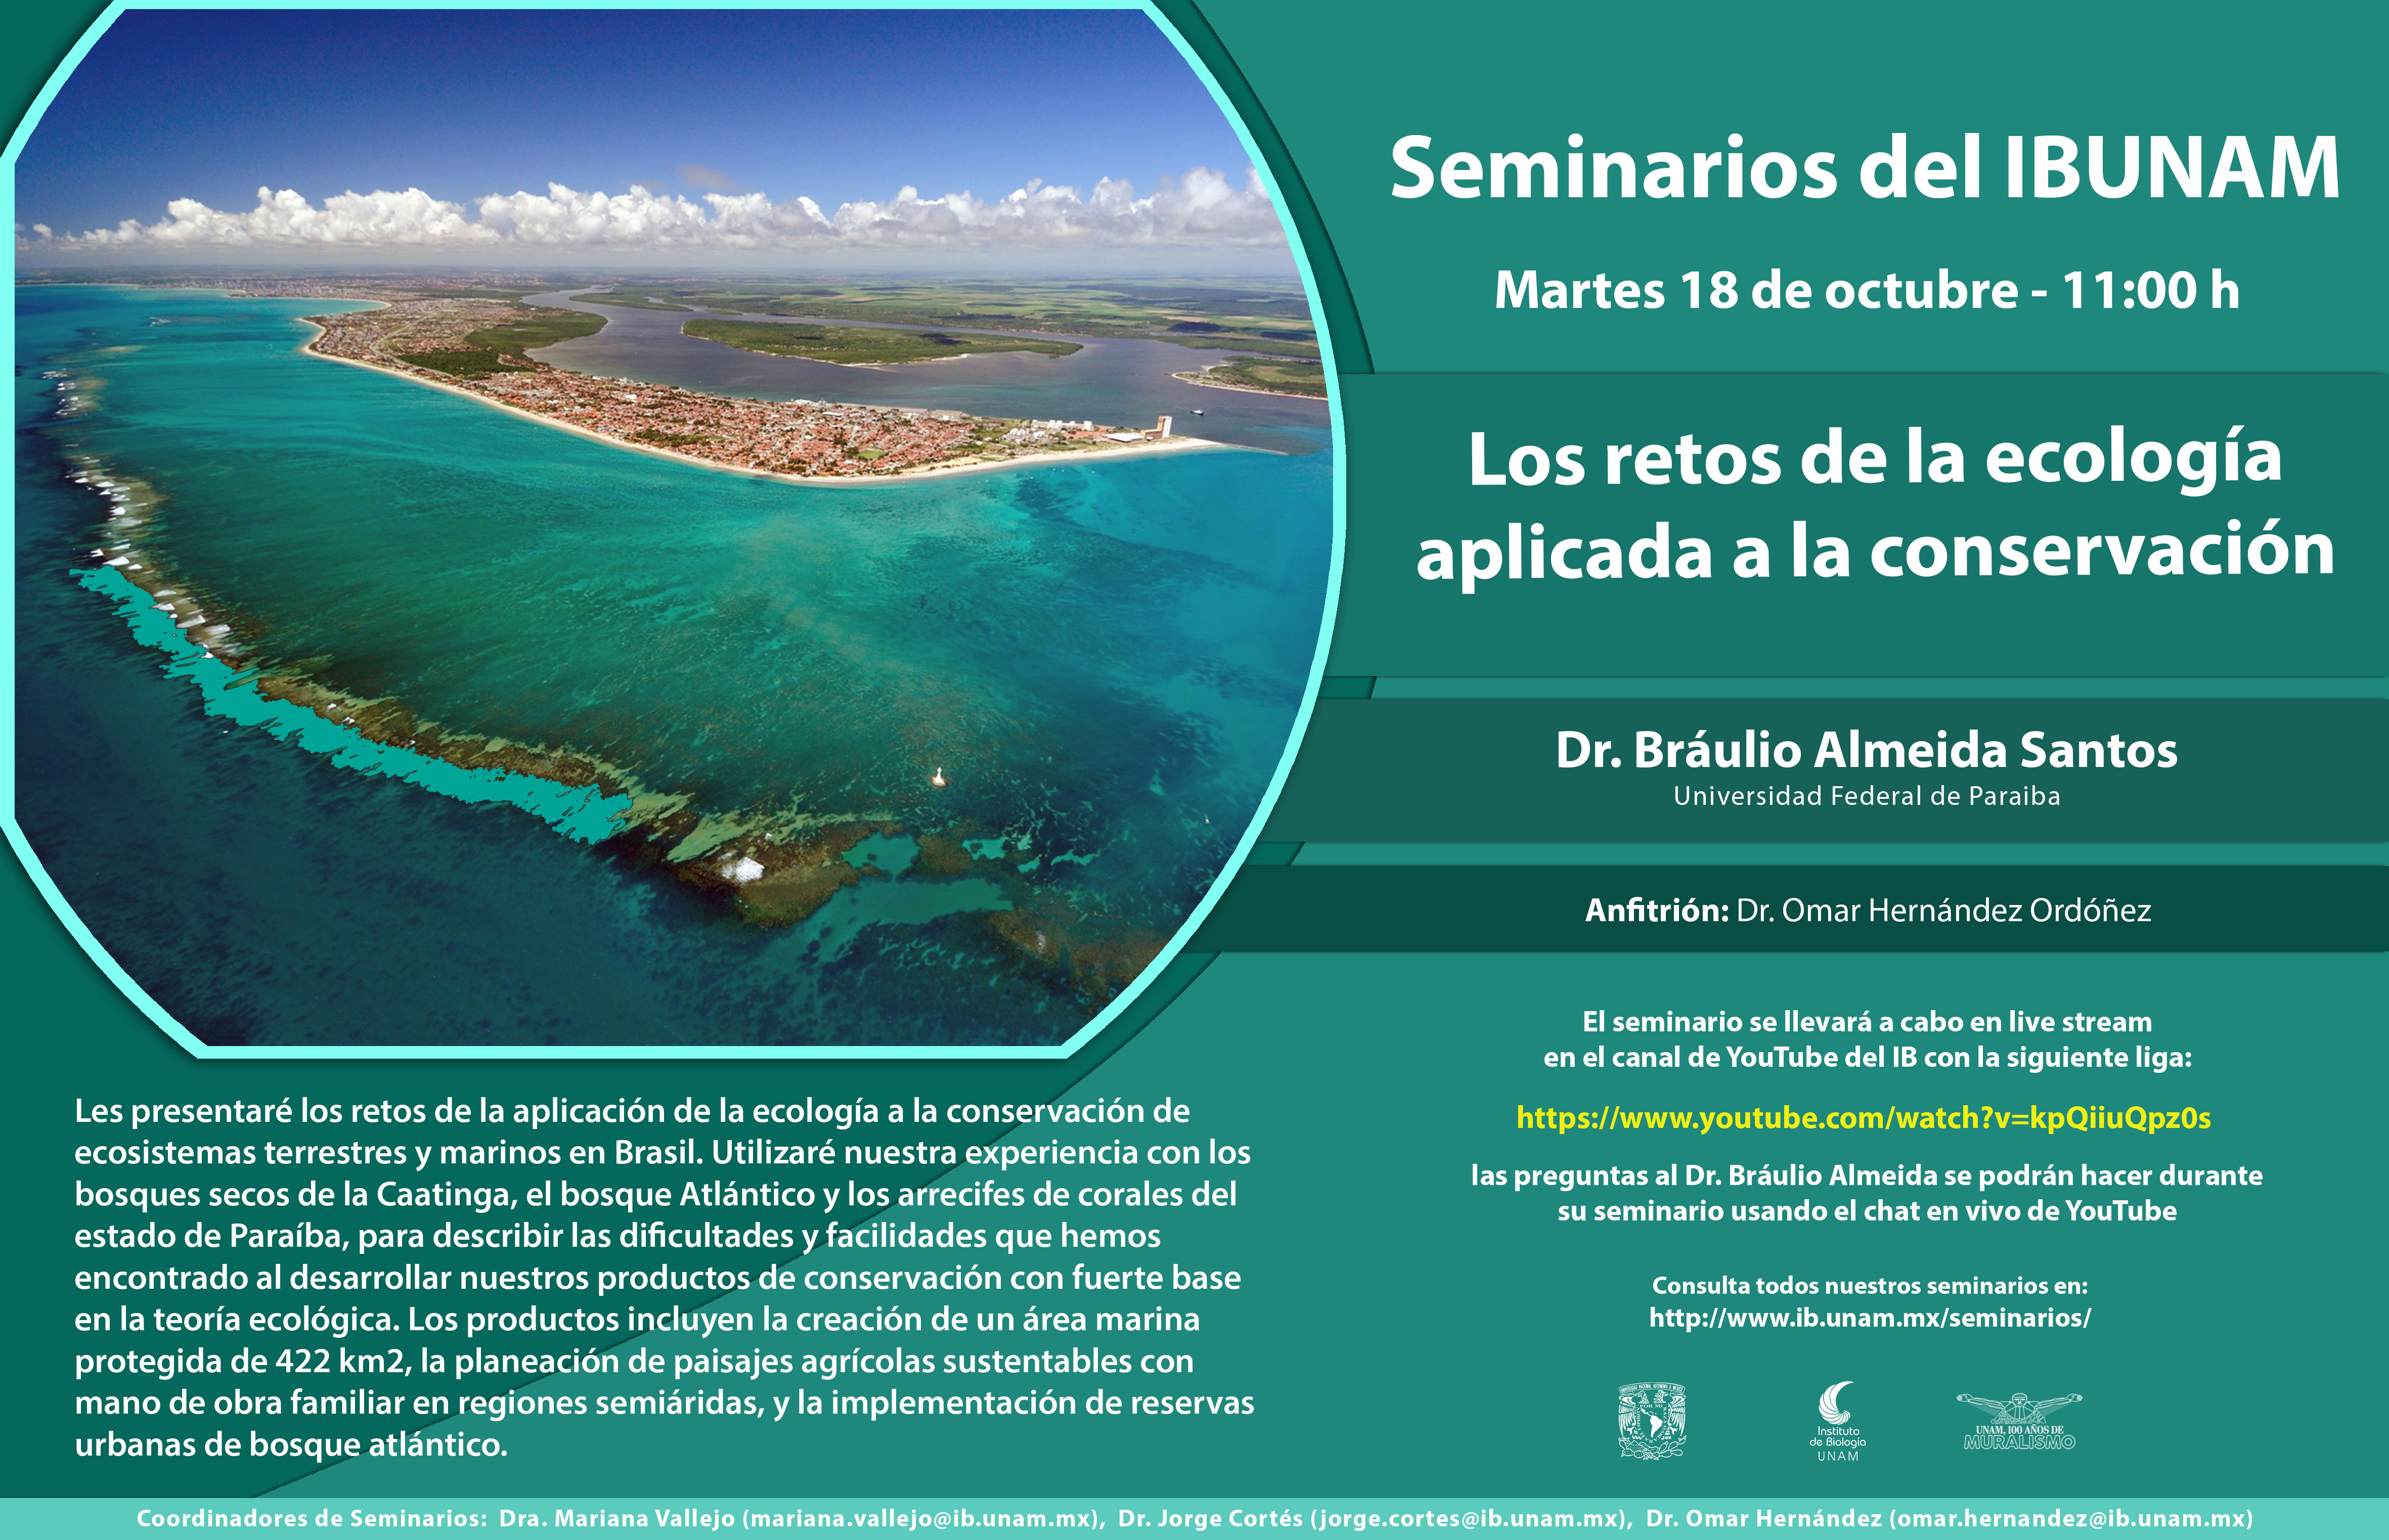 Los retos de la ecología aplicada a la conservación - Instituto de Biología, UNAM